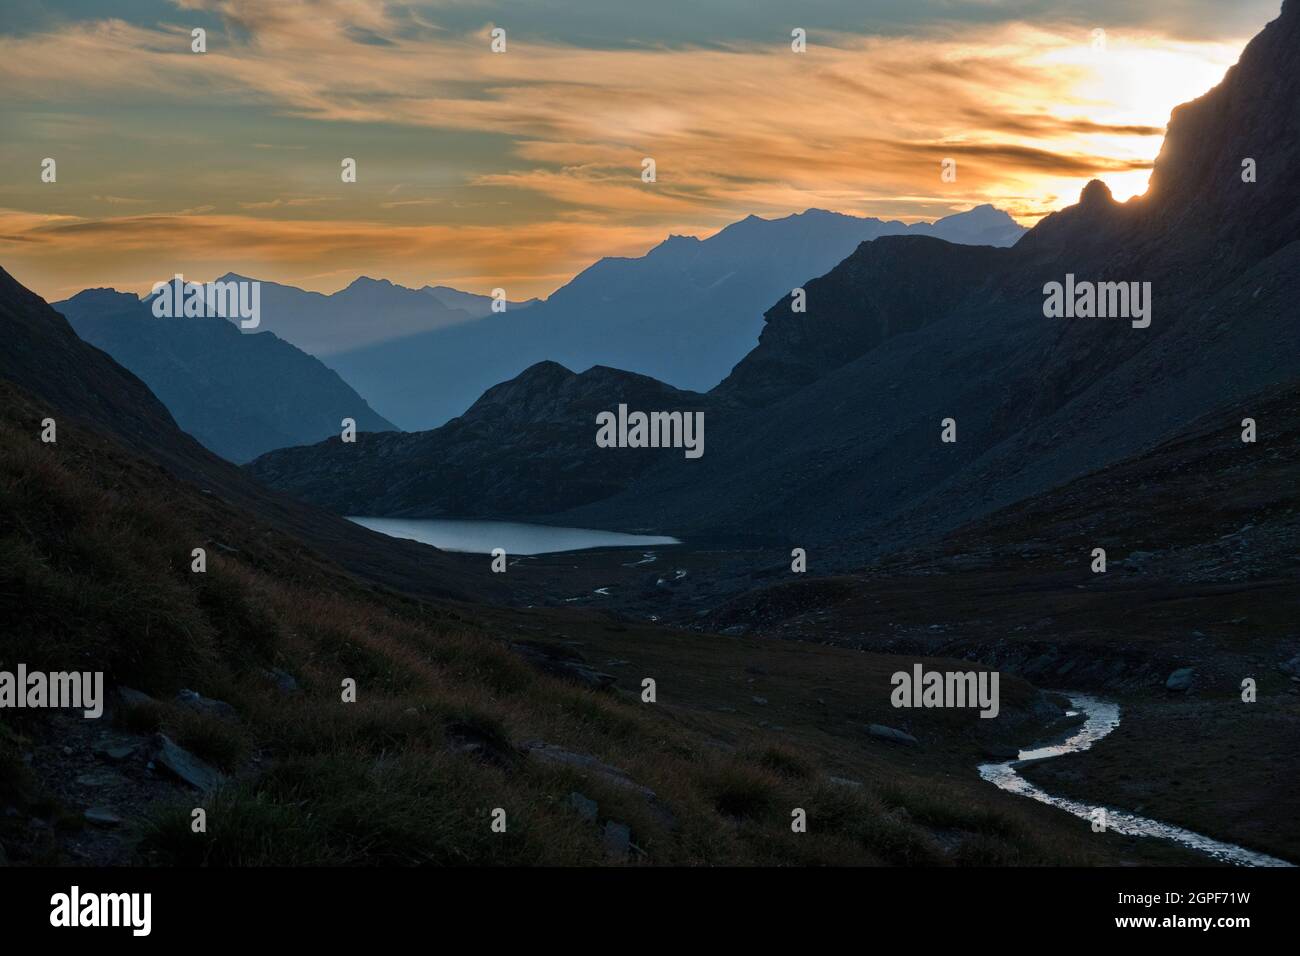 Am frühen Morgen in den Alpen: Silhouetten von Bergen in trüben Farben, ein silbriger See und ein Fluss im Vordergrund. Stockfoto